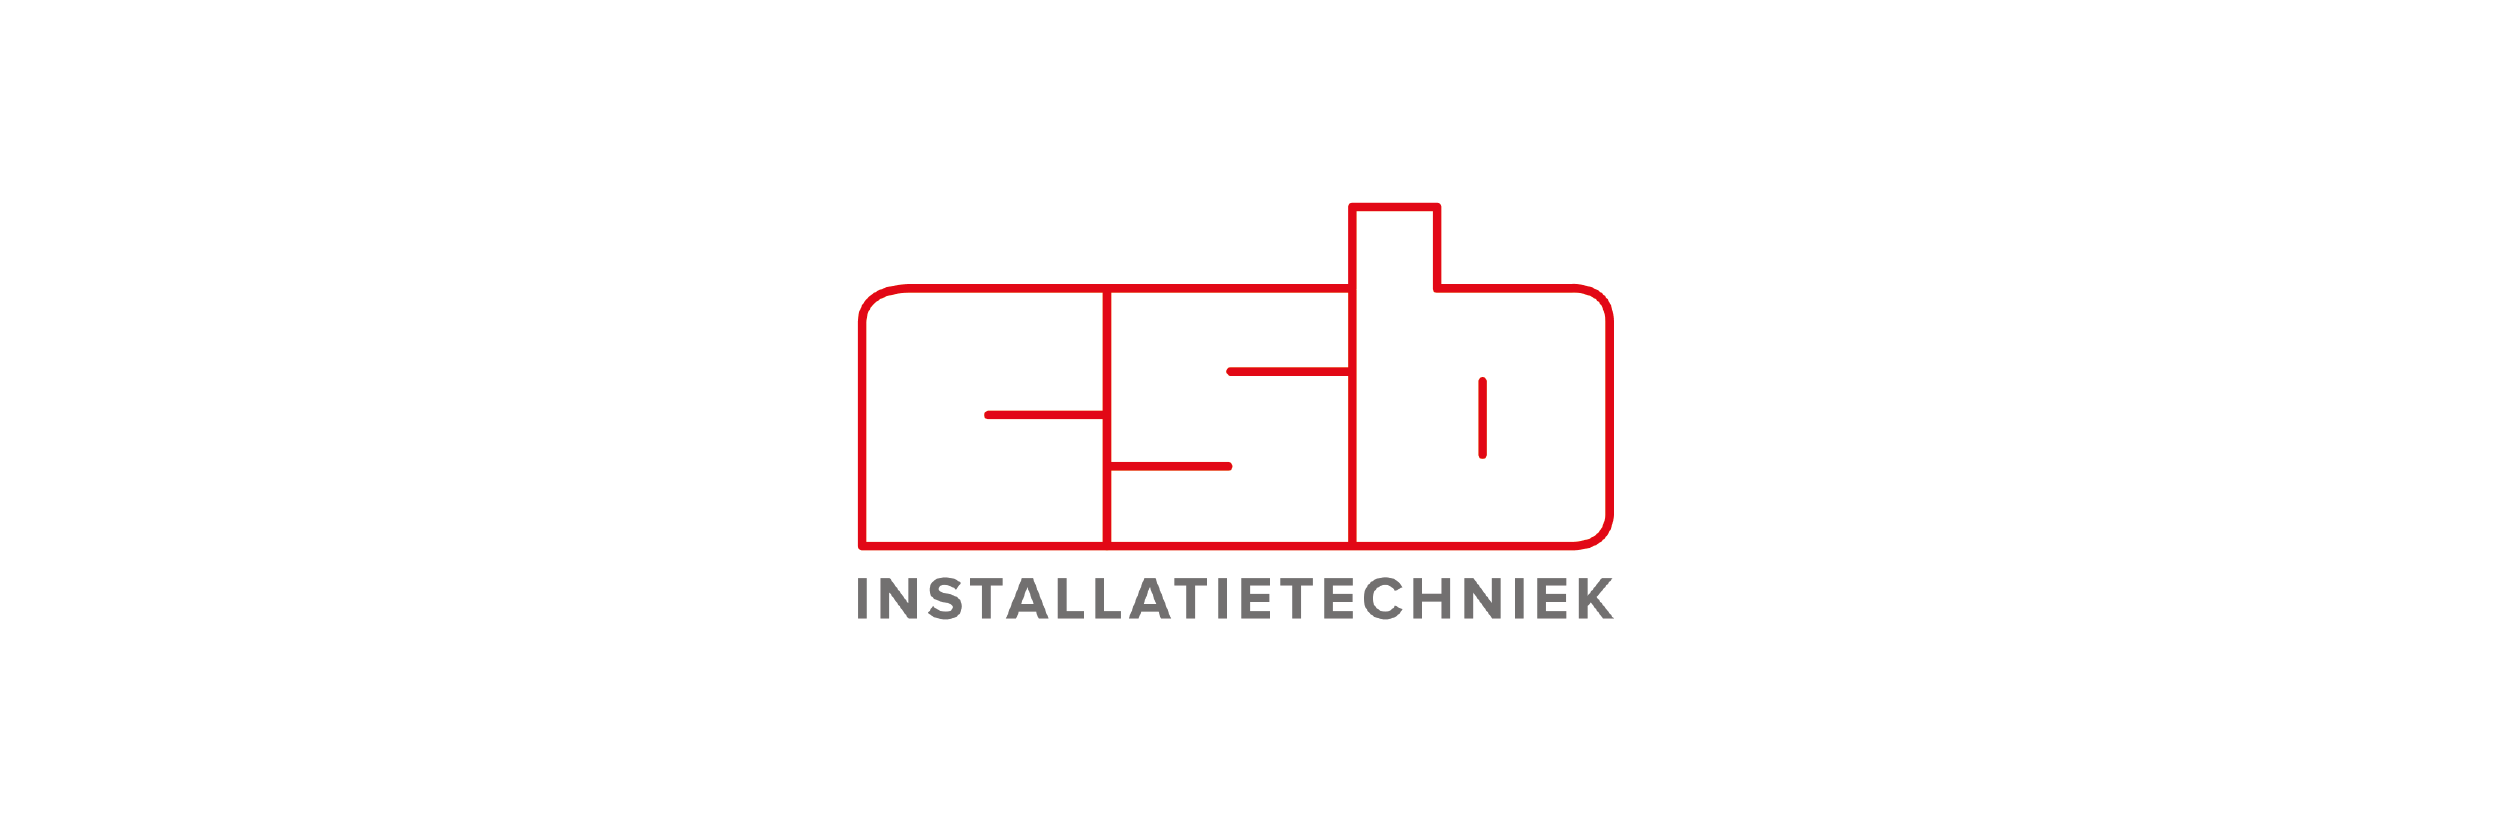 CSB.logowebsitepromoodt_Tekengebied 1.png